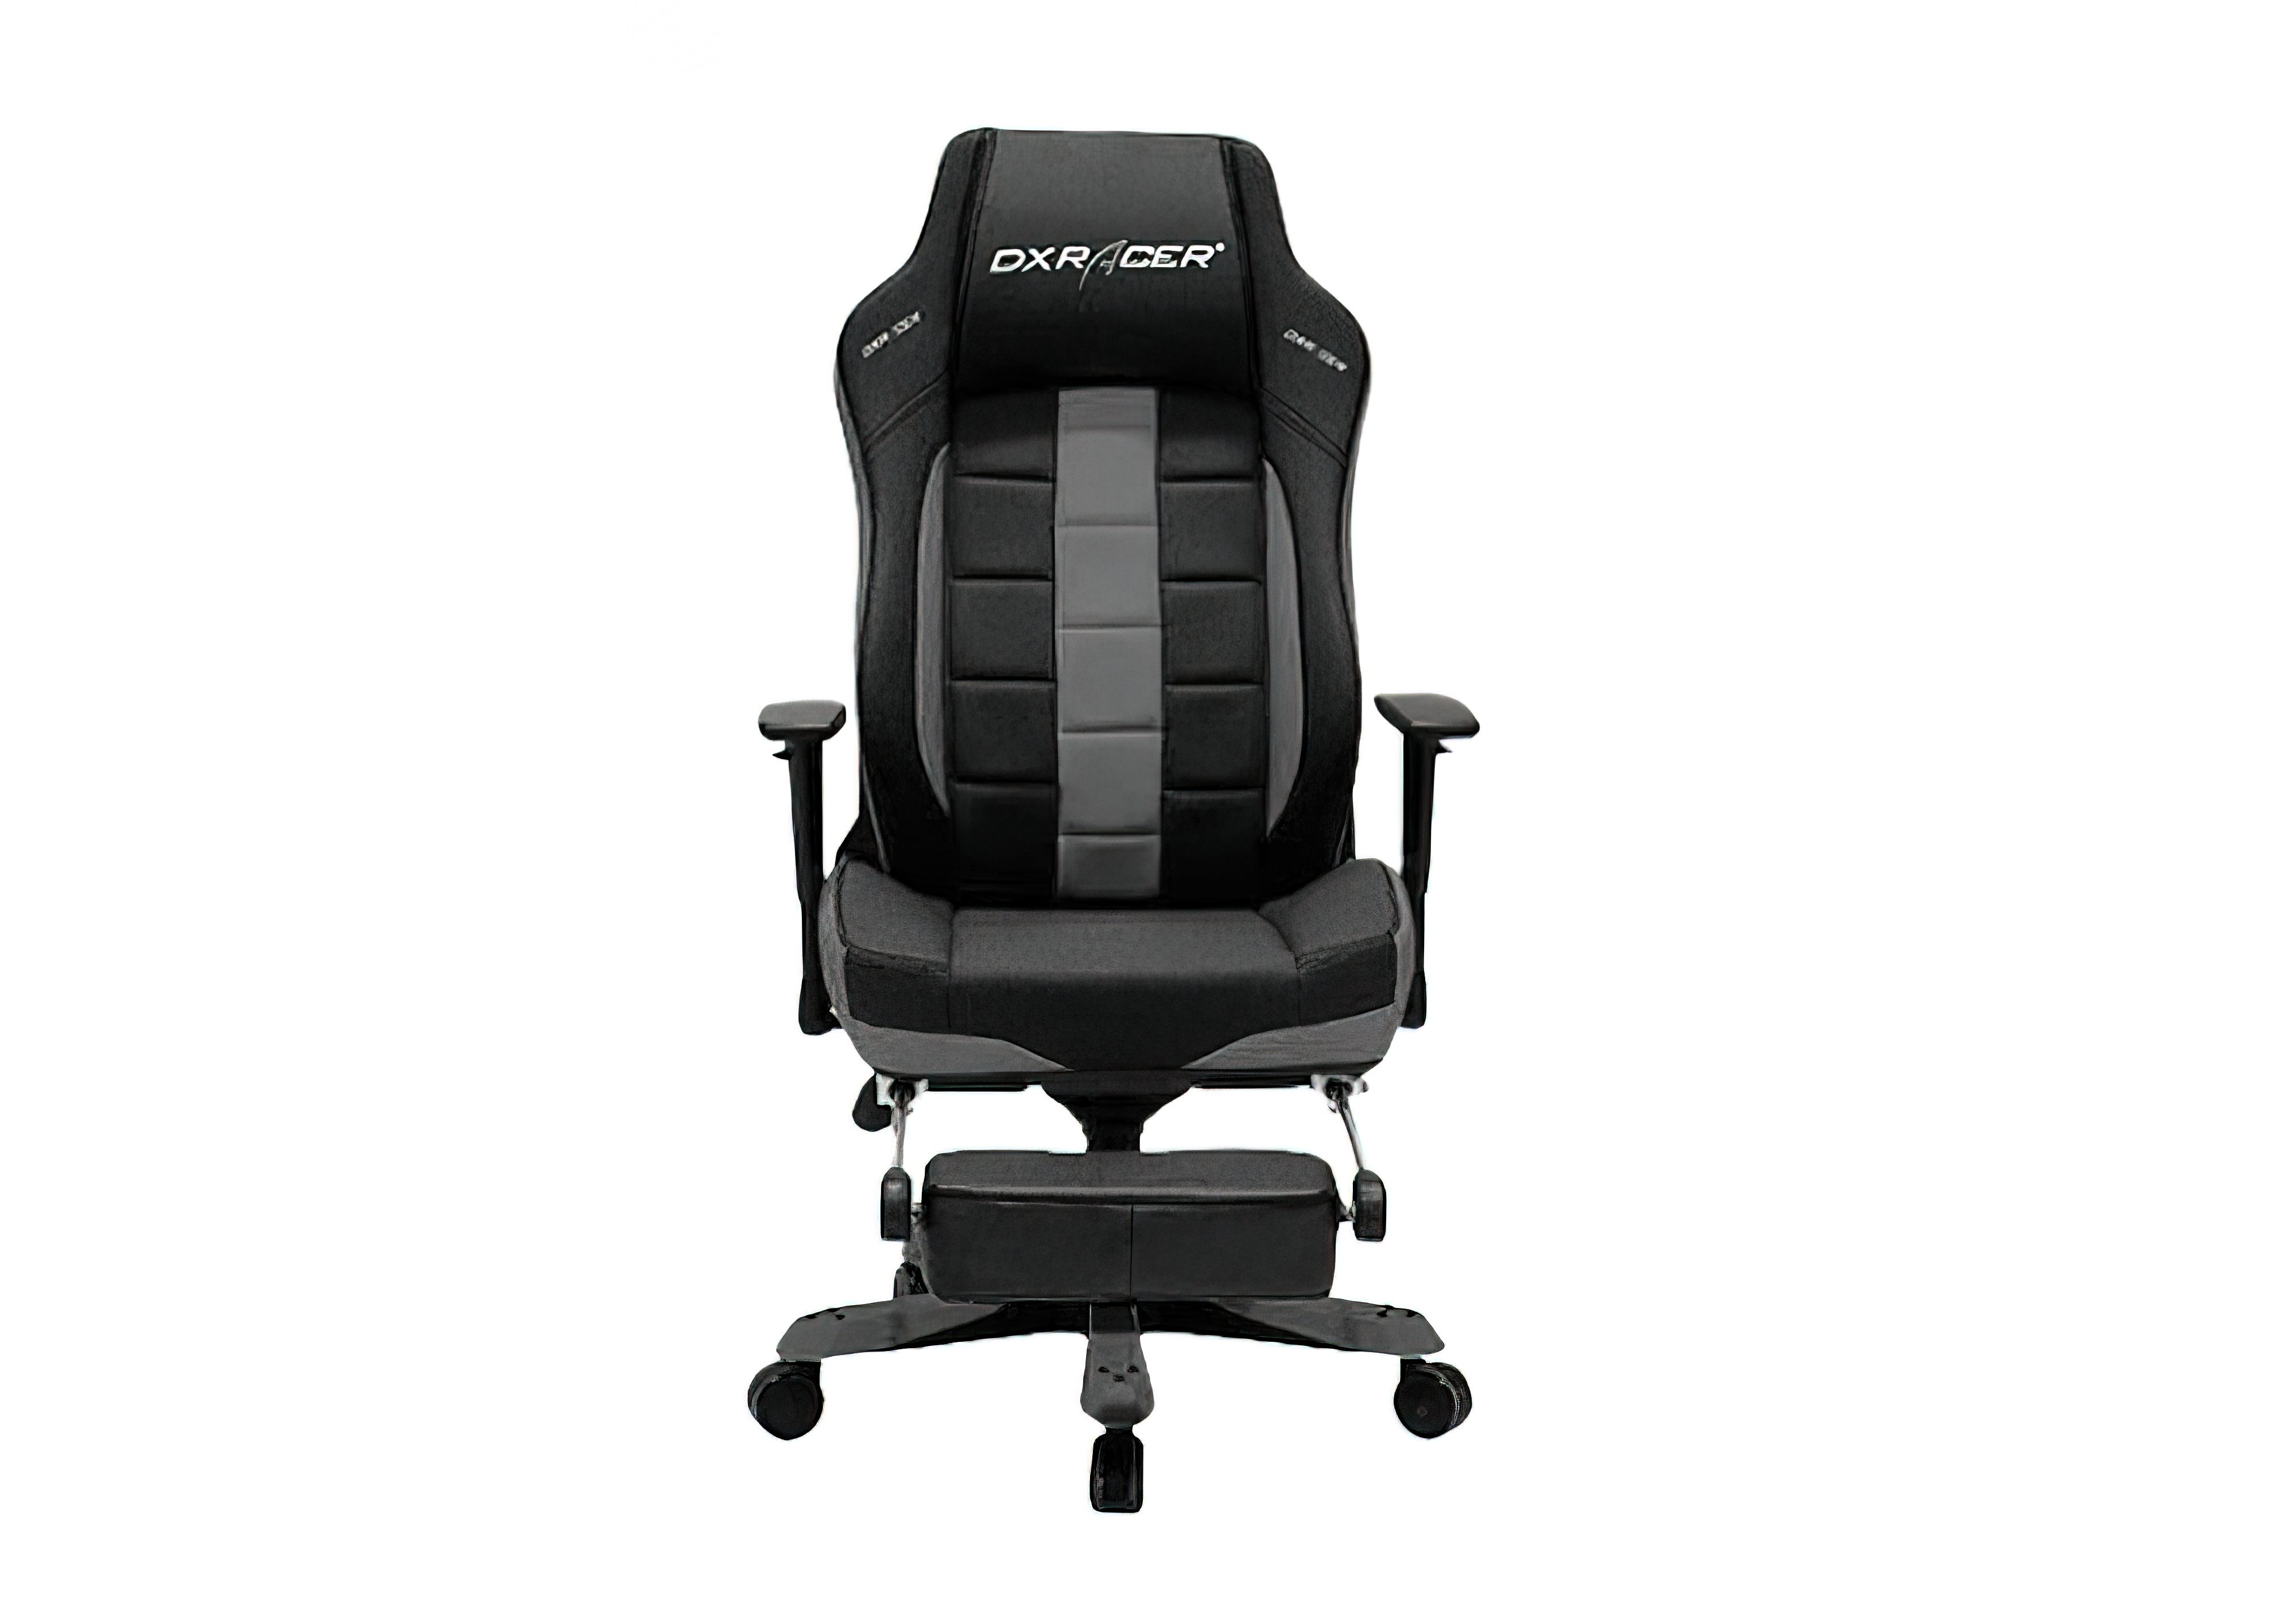 Кресло Classic OH/CT120/NG DXRacer, Высота 138см, Ширина сиденья 53см, Глубина сиденья 49см